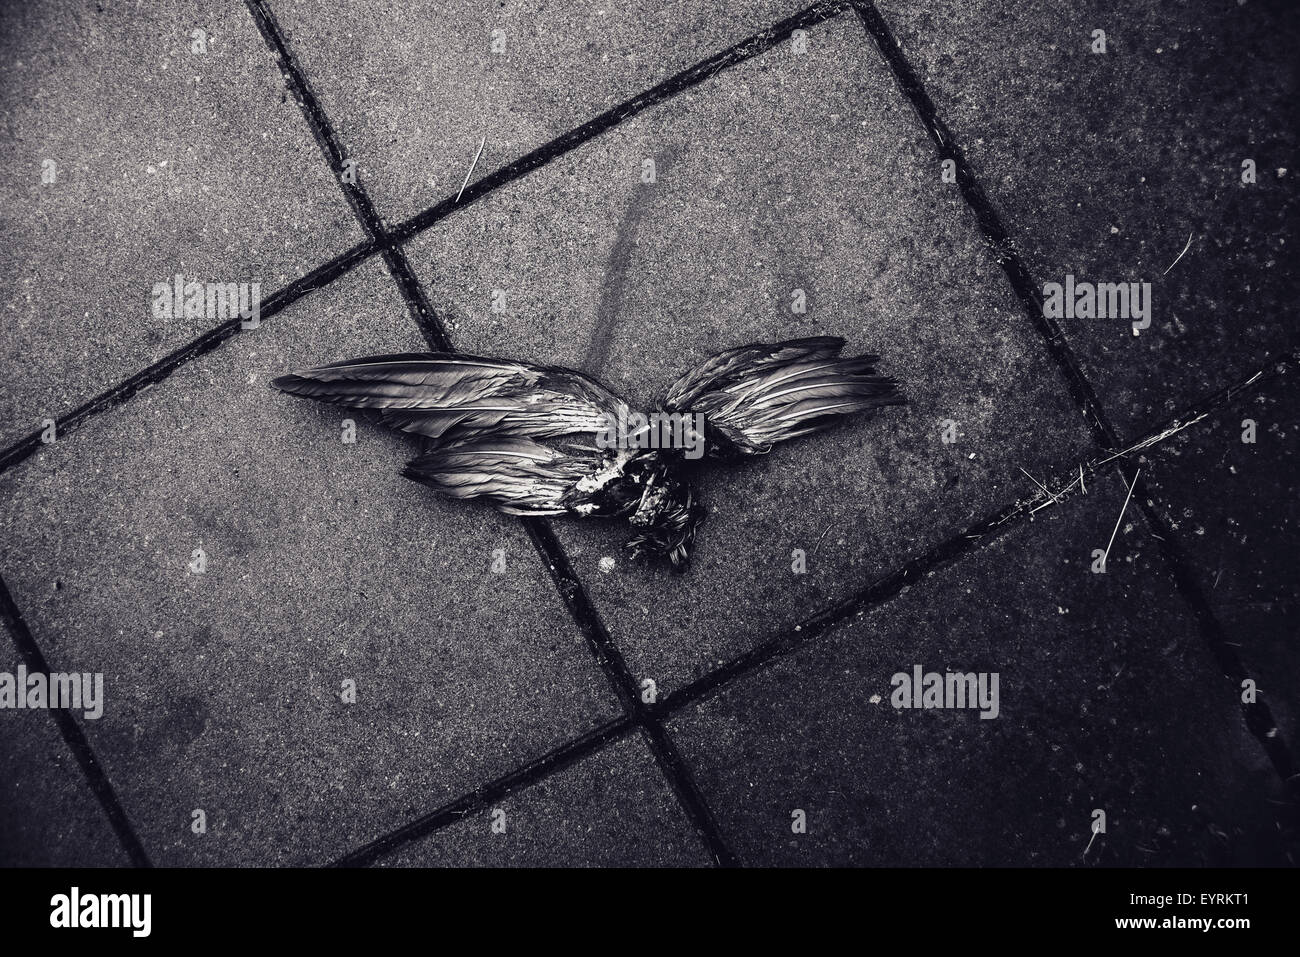 Pájaro muerto con alas extendidas sobre el pavimento de la calle, la imagen en blanco y negro Foto de stock